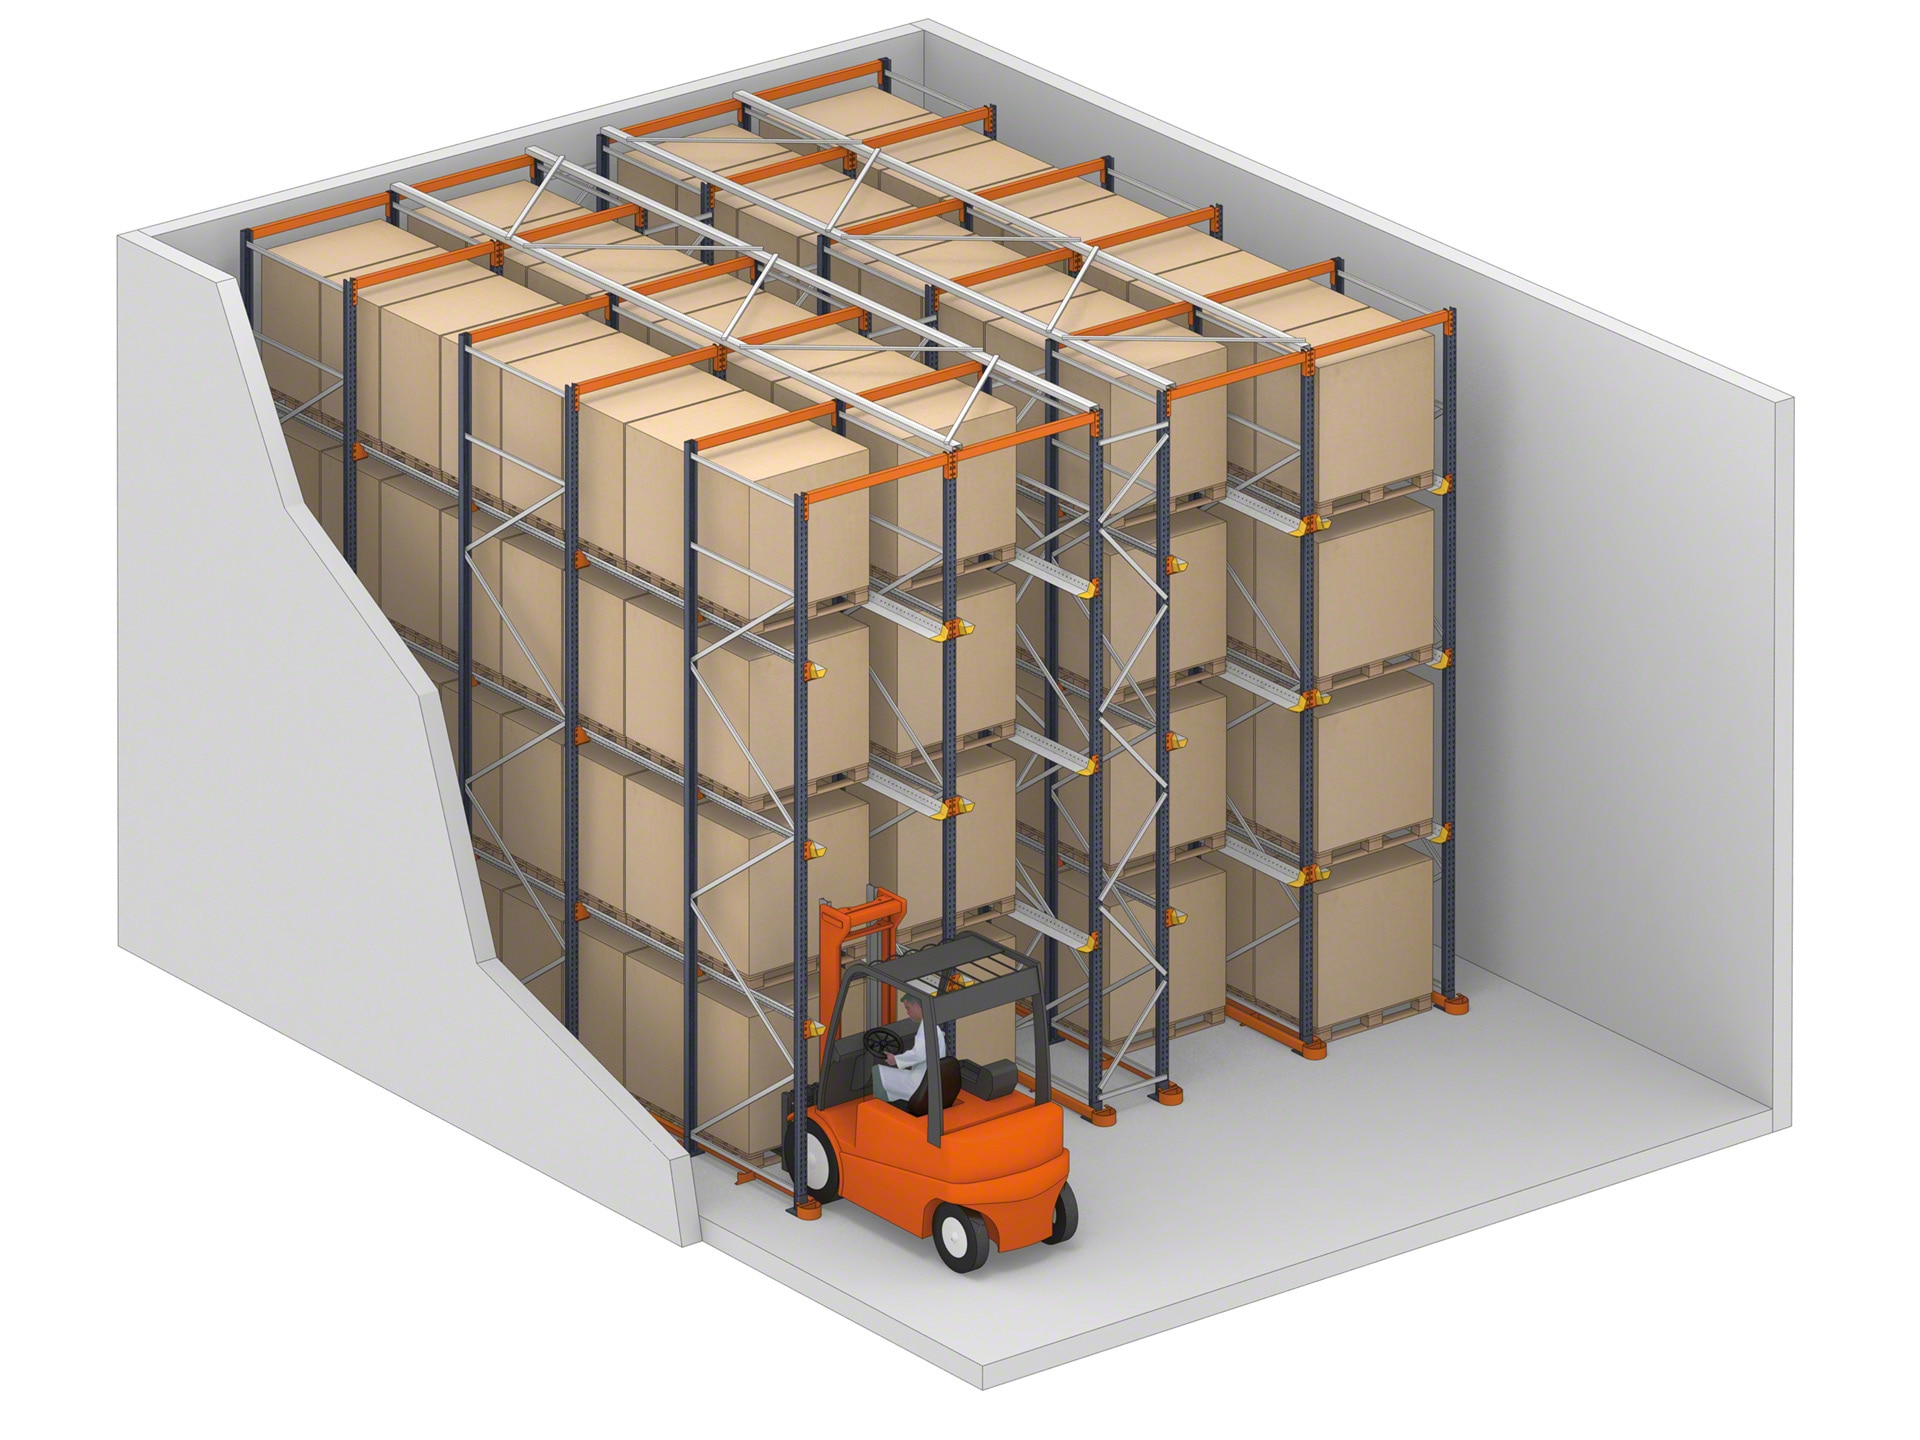 El sistema drive-in son estanterías en las que los montacargas pueden acceder a la mercancía por sus canales de almacenamiento